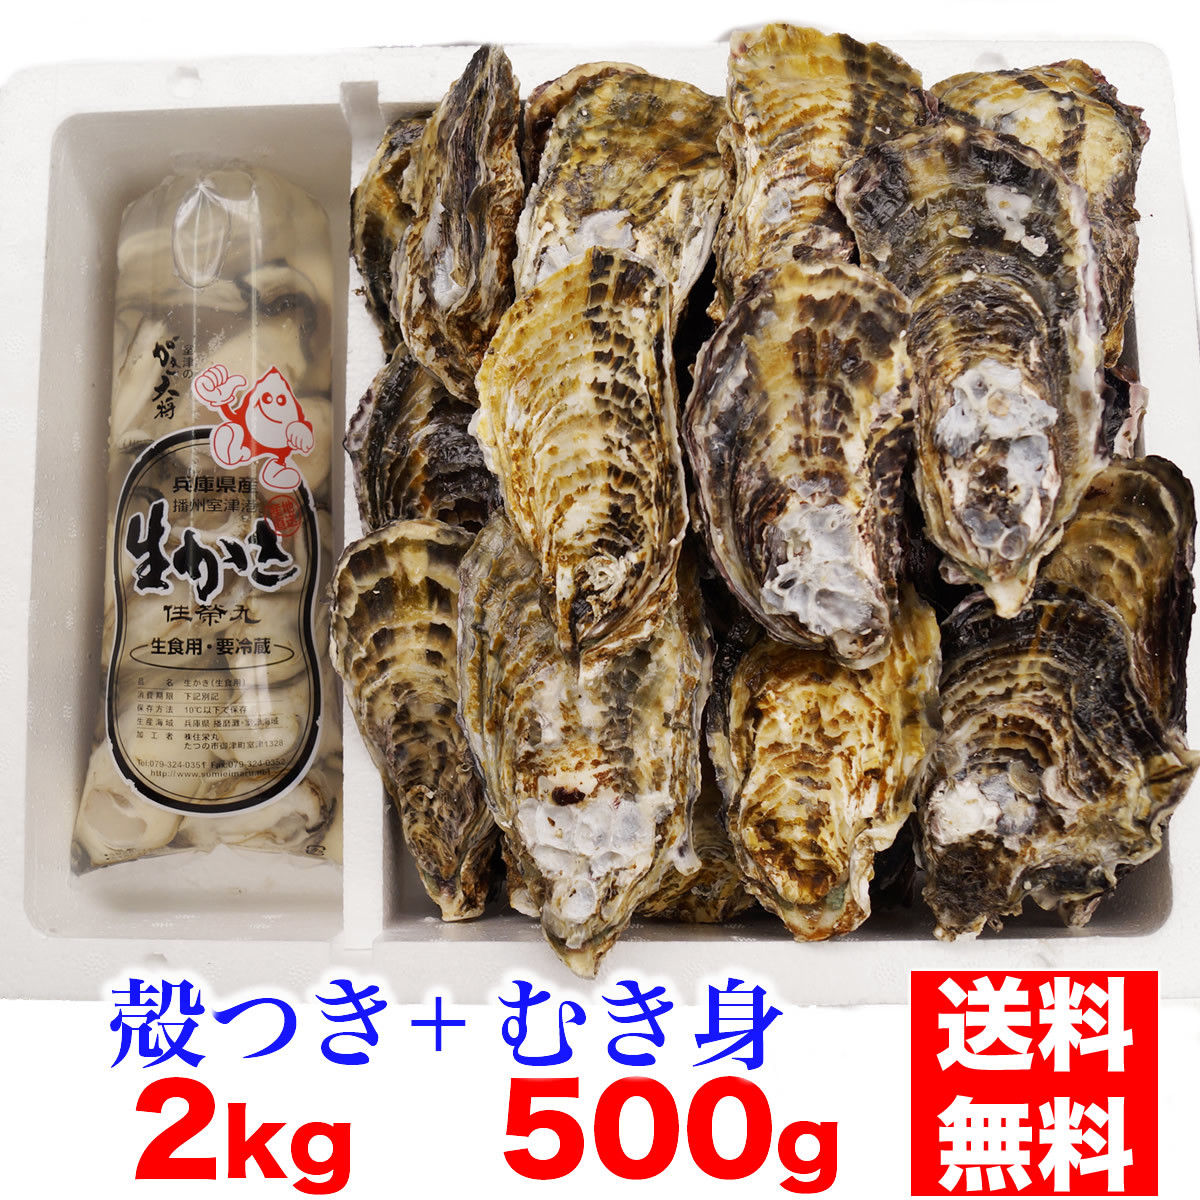 むき身も新鮮 鮮度が自慢です 特価 熟練の技術でむき身にしてなんと その日のうちに出荷しますよ 兵庫県播州室津産 セット 生食用 むき身牡蠣５００g 殻つき牡蠣２kg 最大90%OFFクーポン